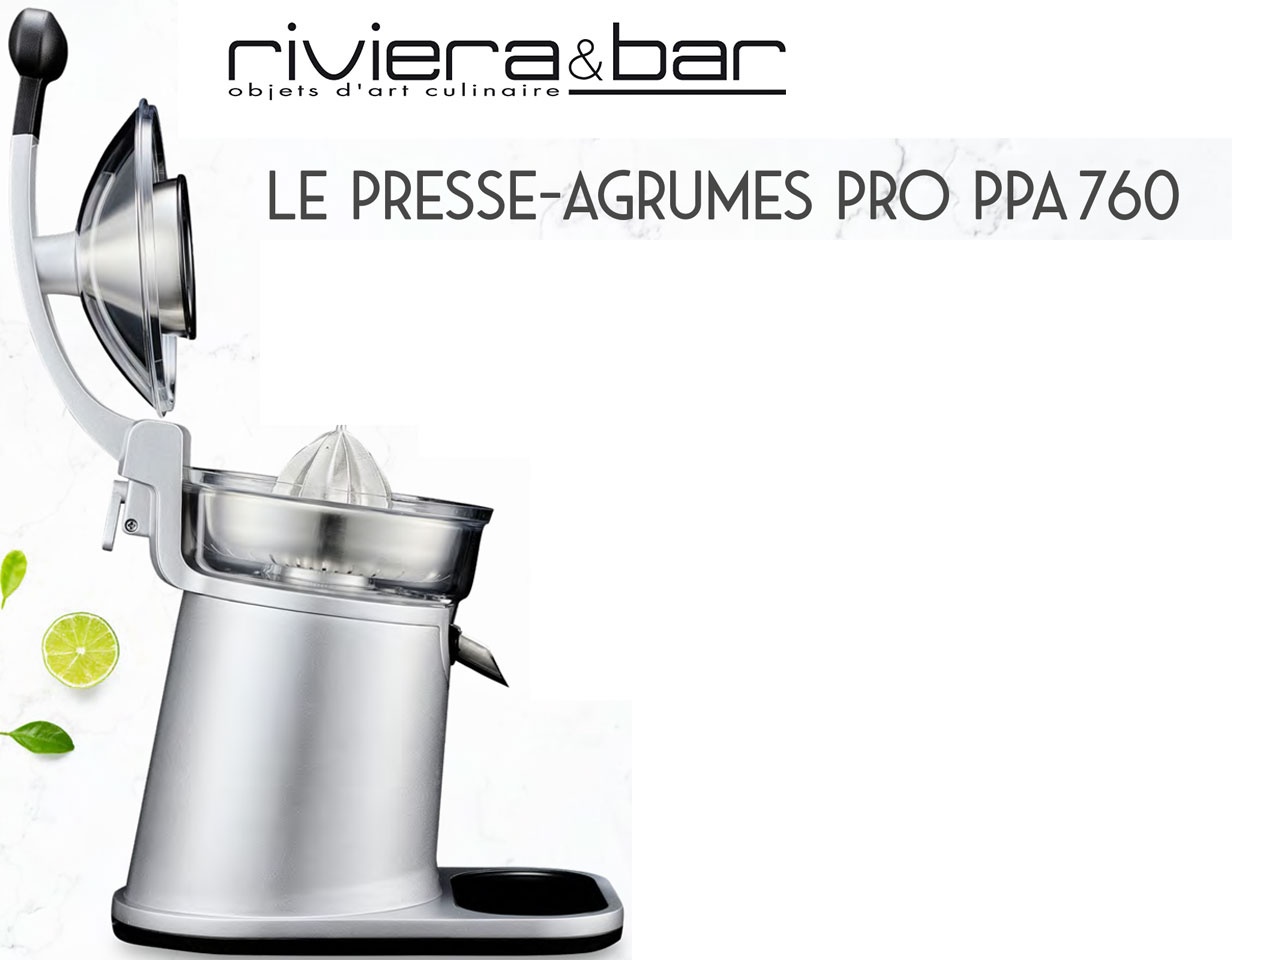 Riviera-et-Bar propose dans la gamme Health, le Presse-agrumes Pro PPA 760